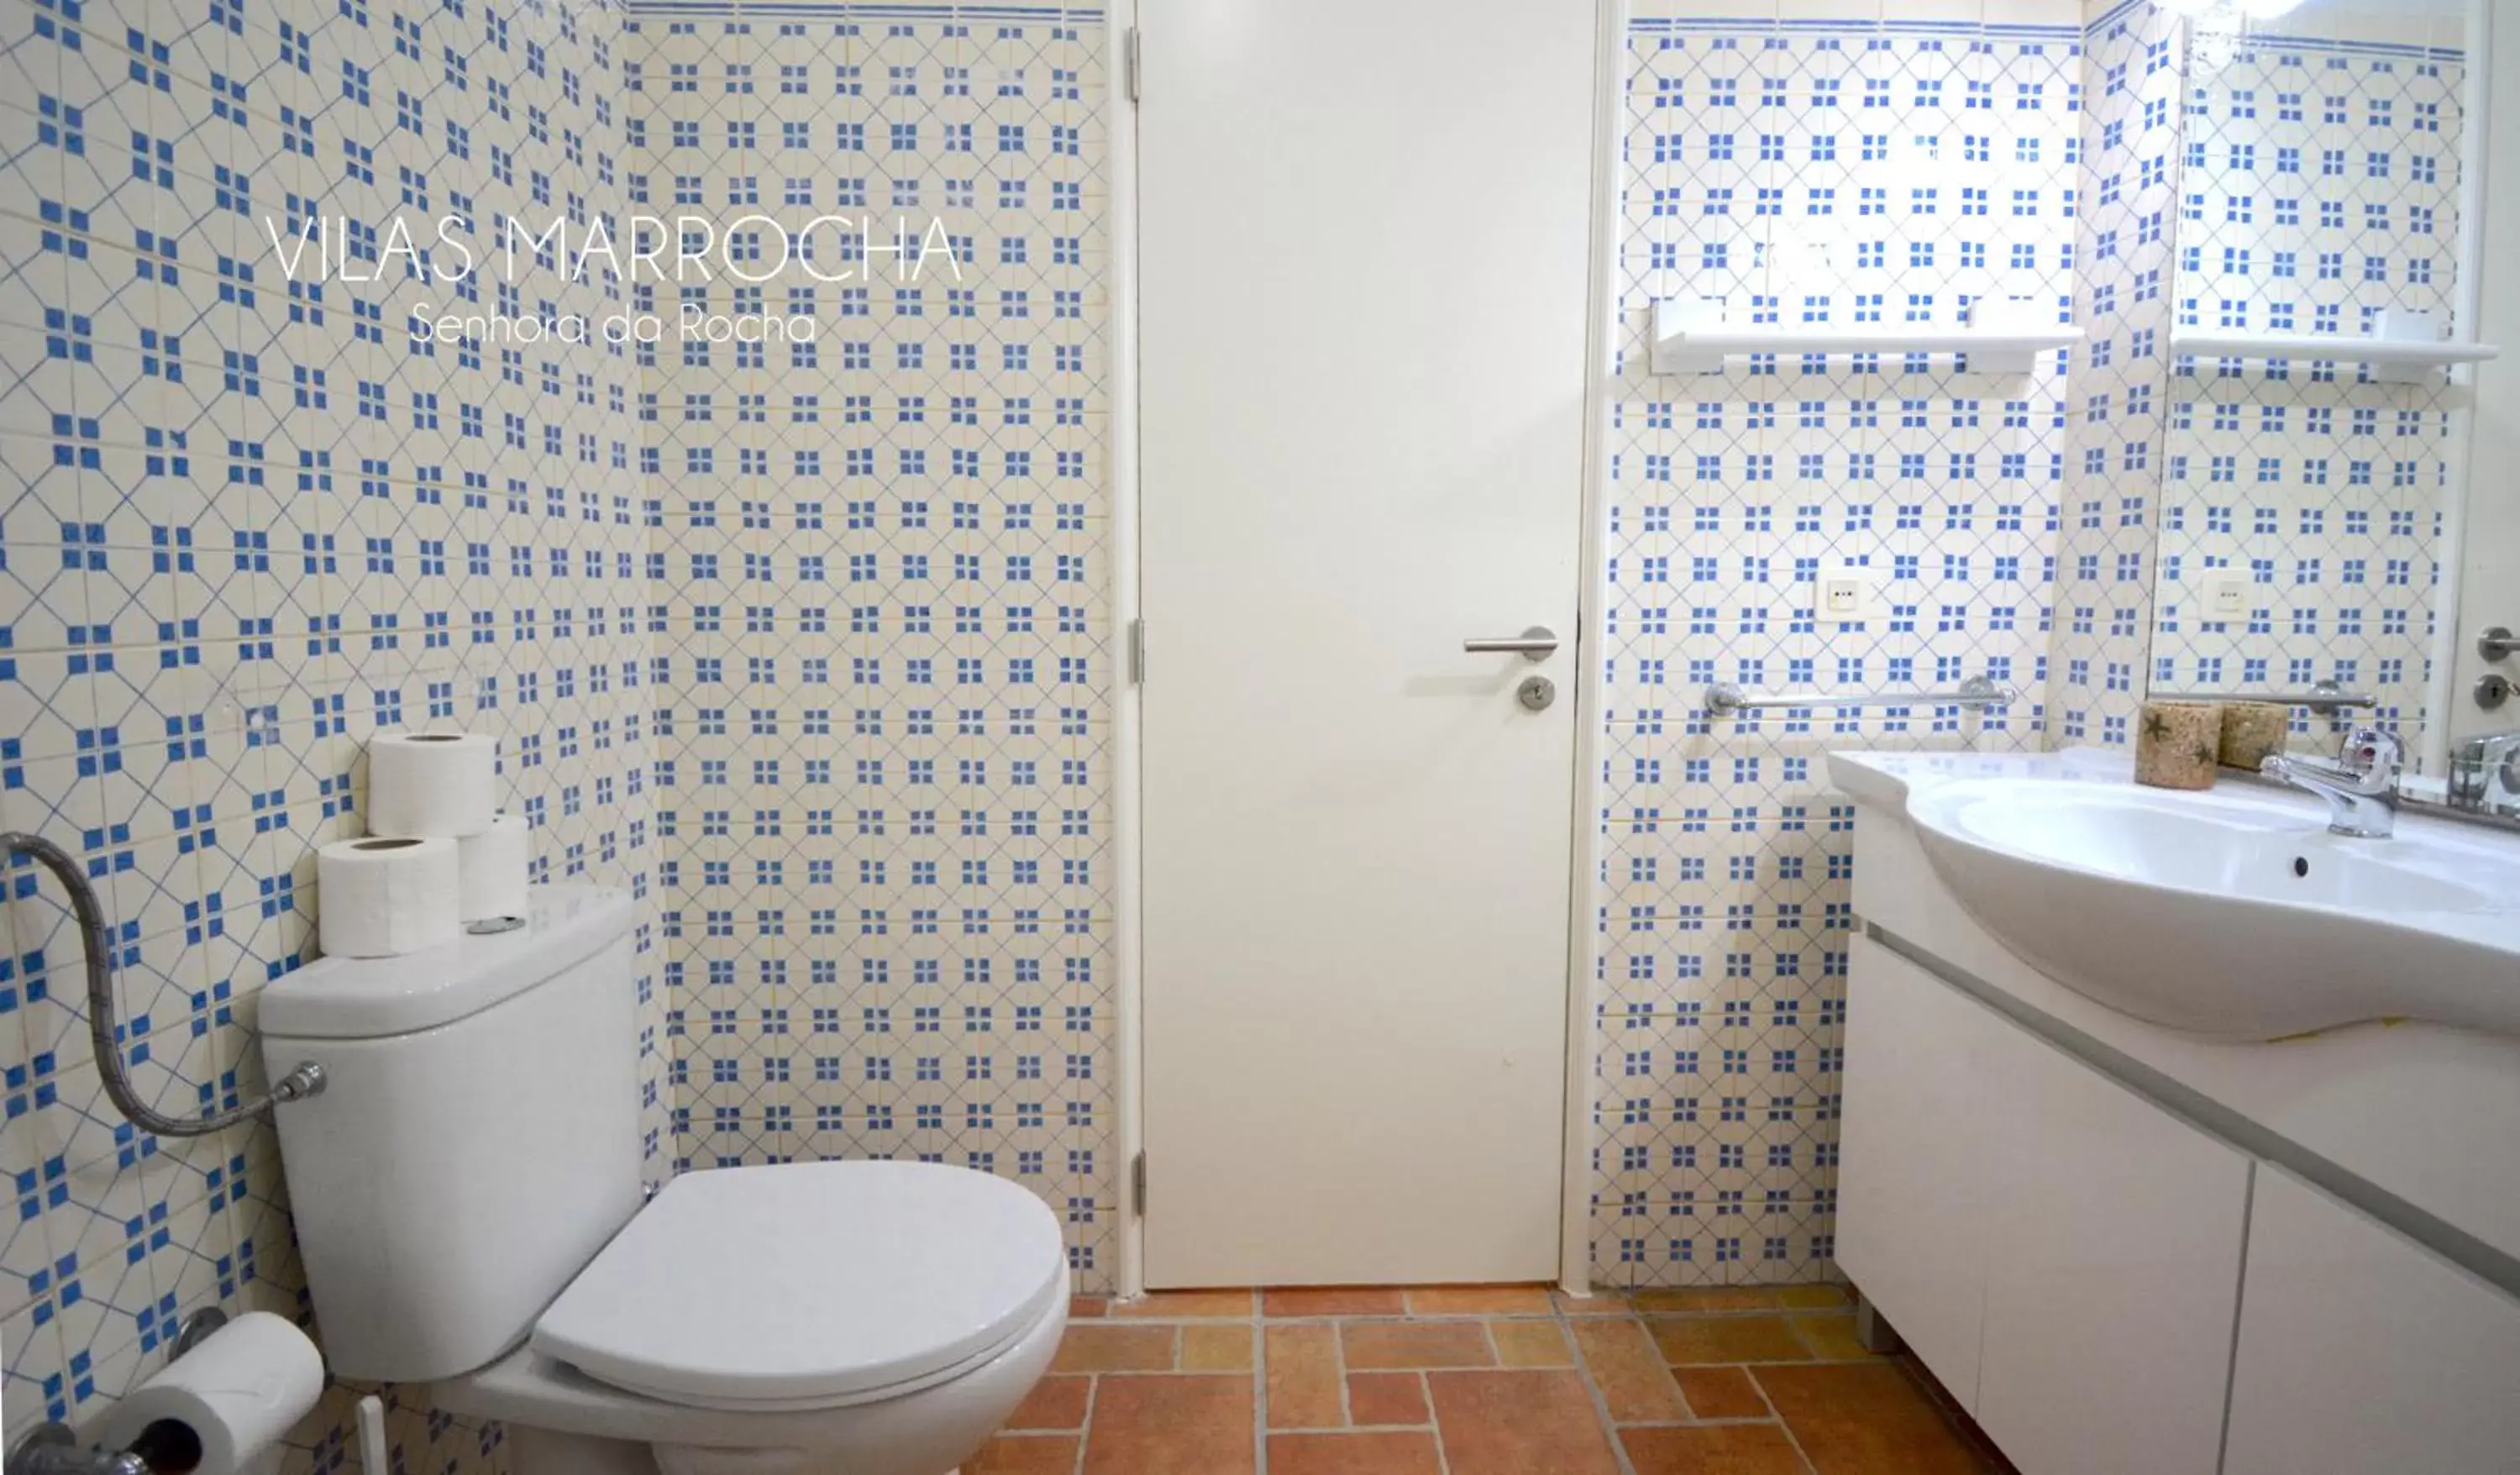 Bathroom in Vilas Marrocha